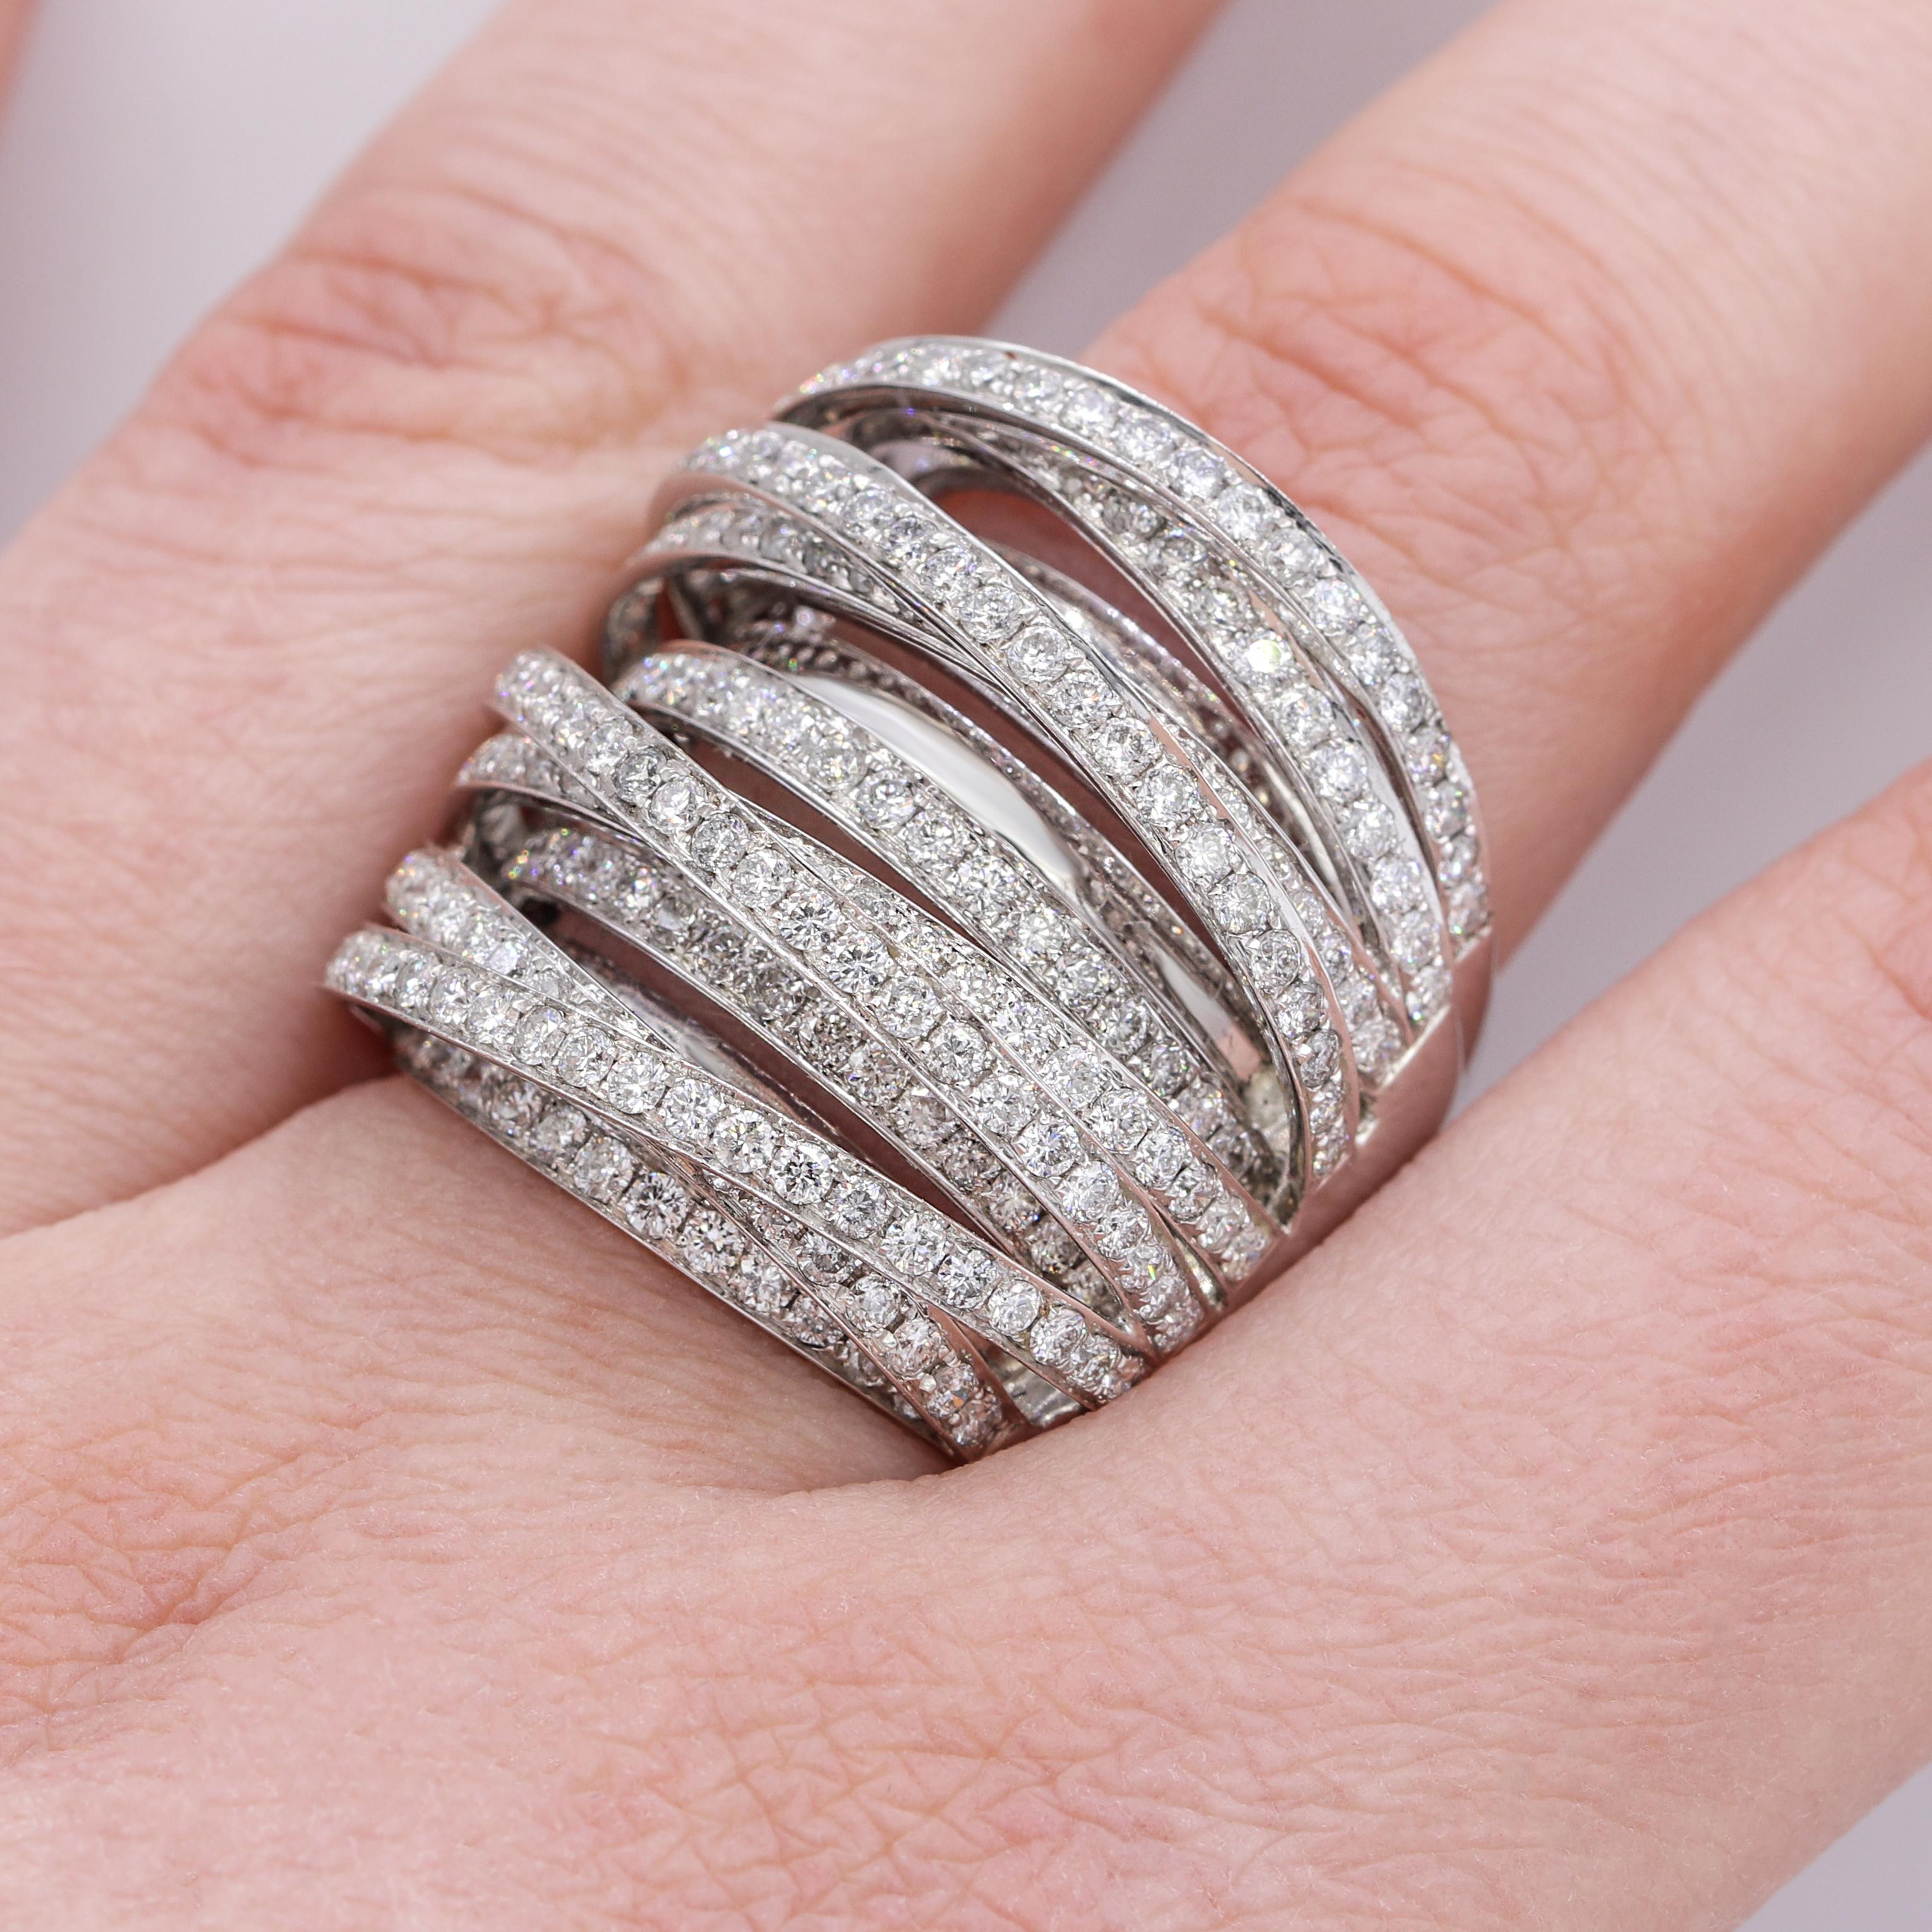 18K Weißgold Multi-Band-Ring
Crossover-Ring mit mehreren Bändern, durchgehend mit runden Diamanten besetzt, mit 4,50 Karat Diamanten 
Can auf jede Fingergröße angepasst werden 

Spezifikationen für Diamanten:
Farbe F/G, Reinheit SI 

Dieses Produkt